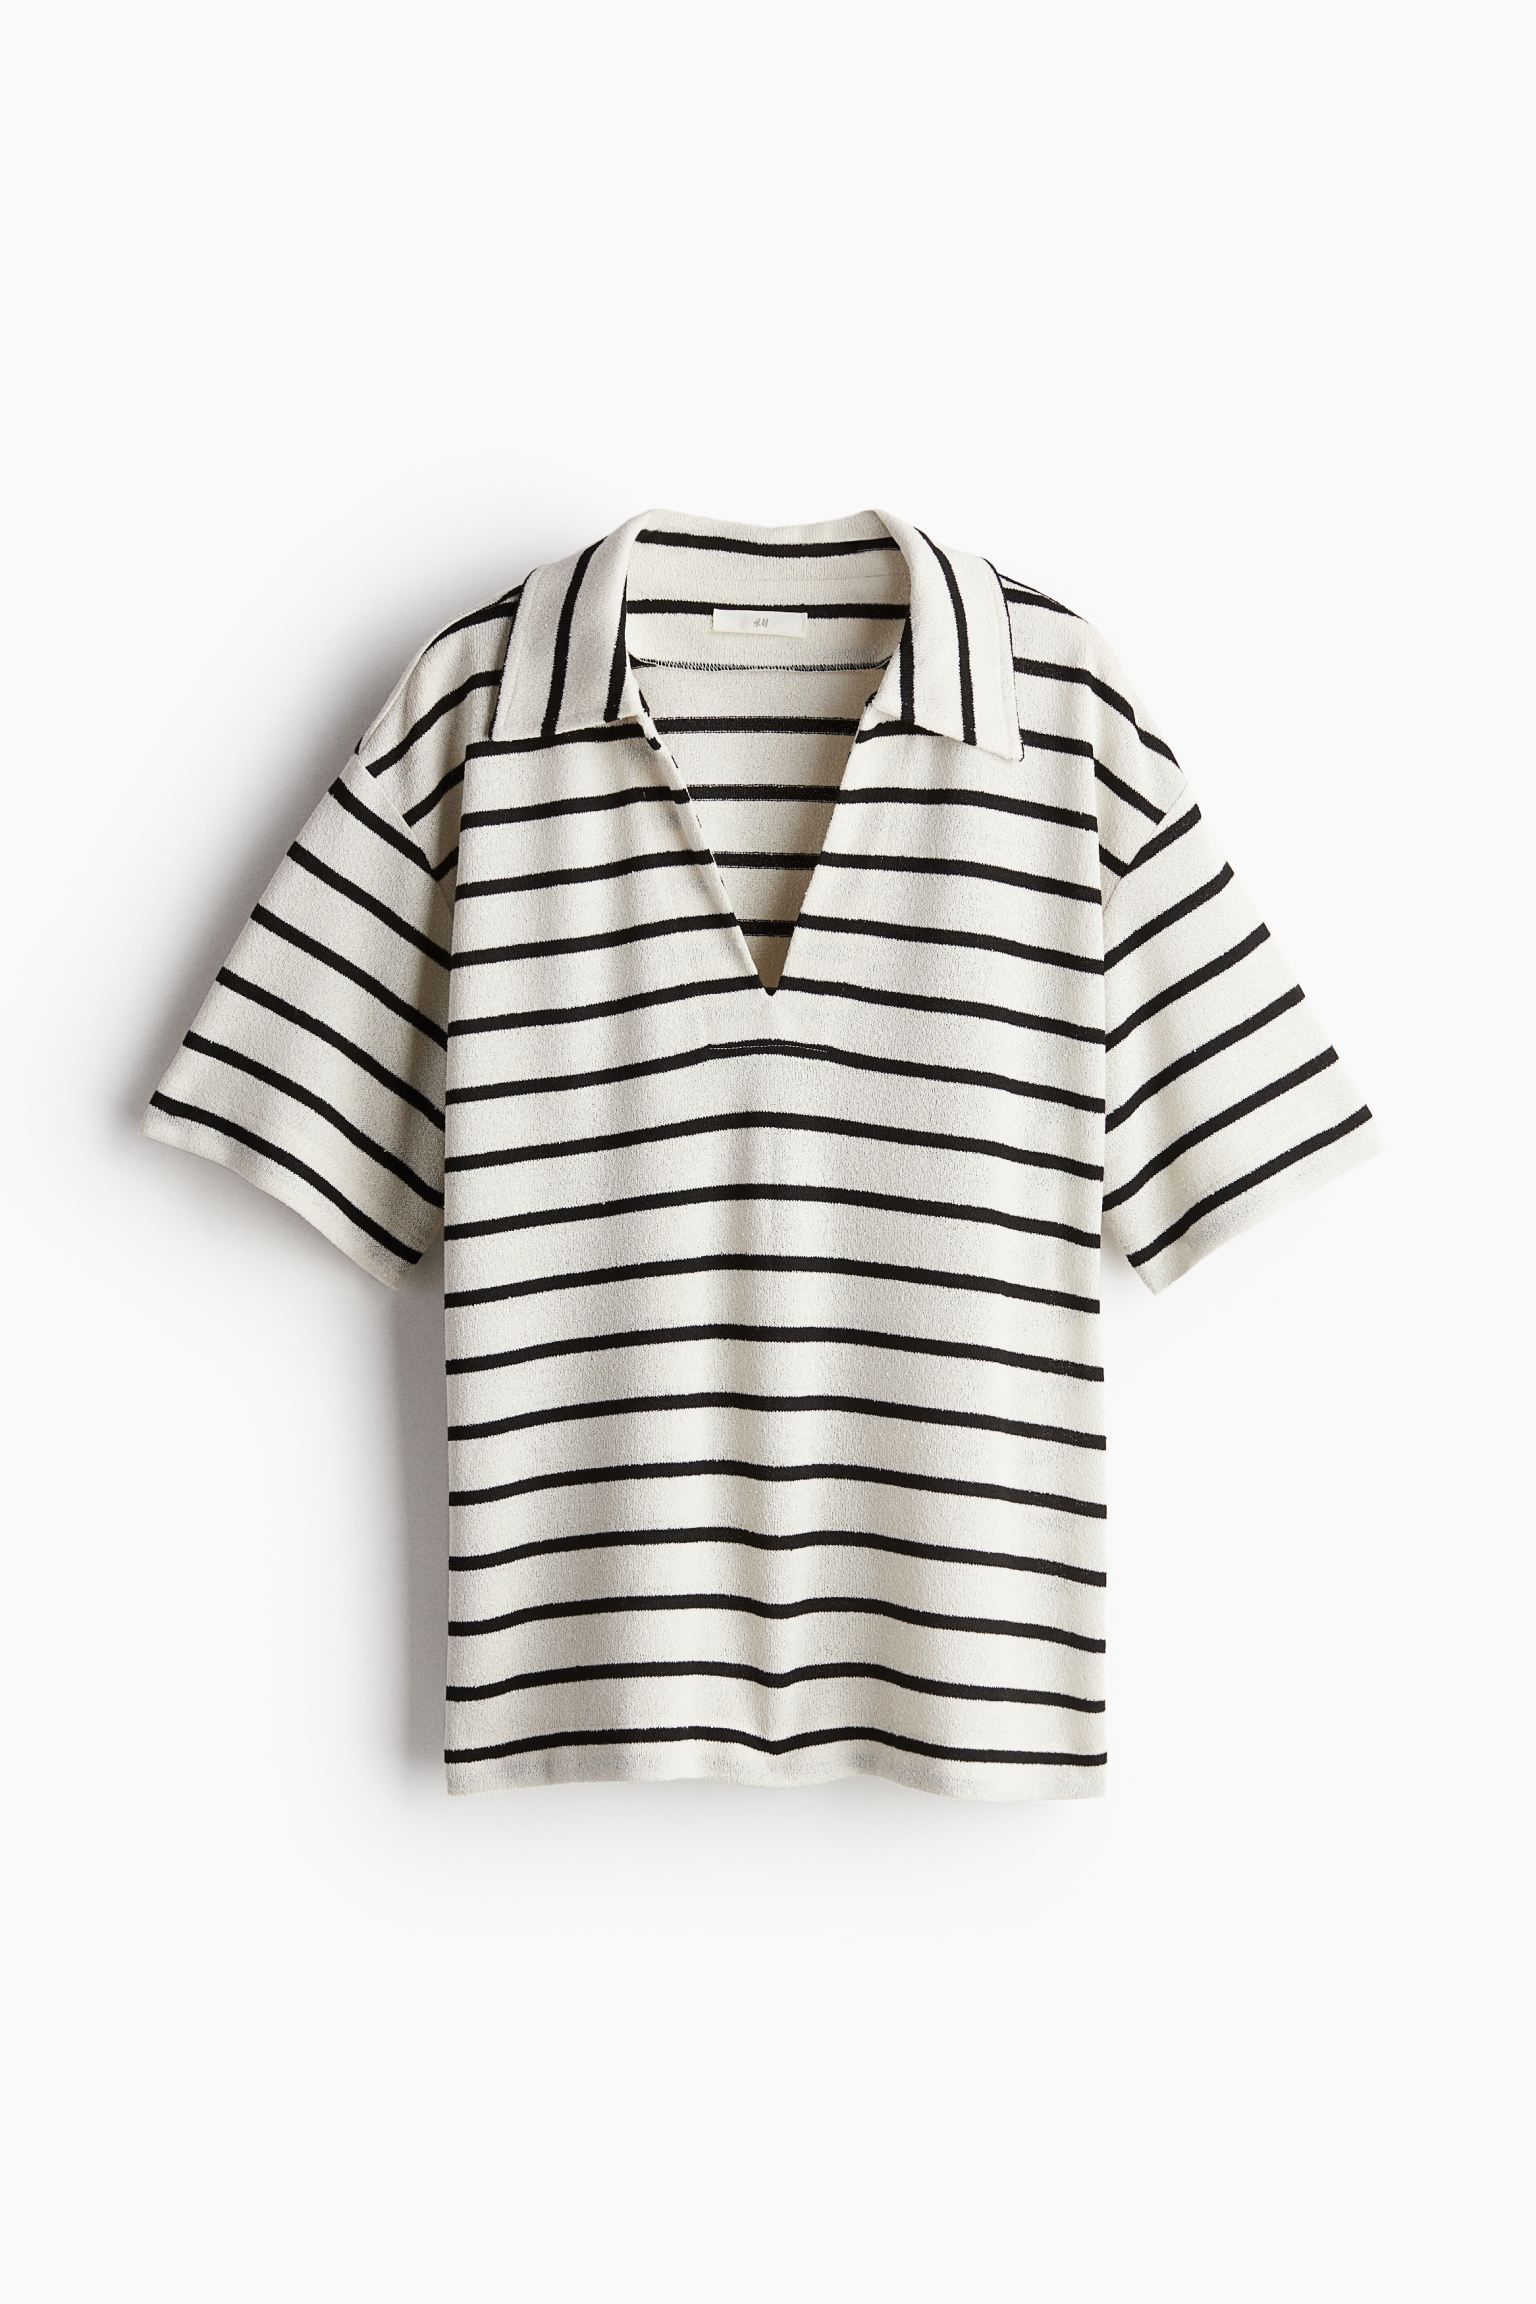 Top with Collar - Cream/black striped - Ladies | H&M US | H&M (US + CA)